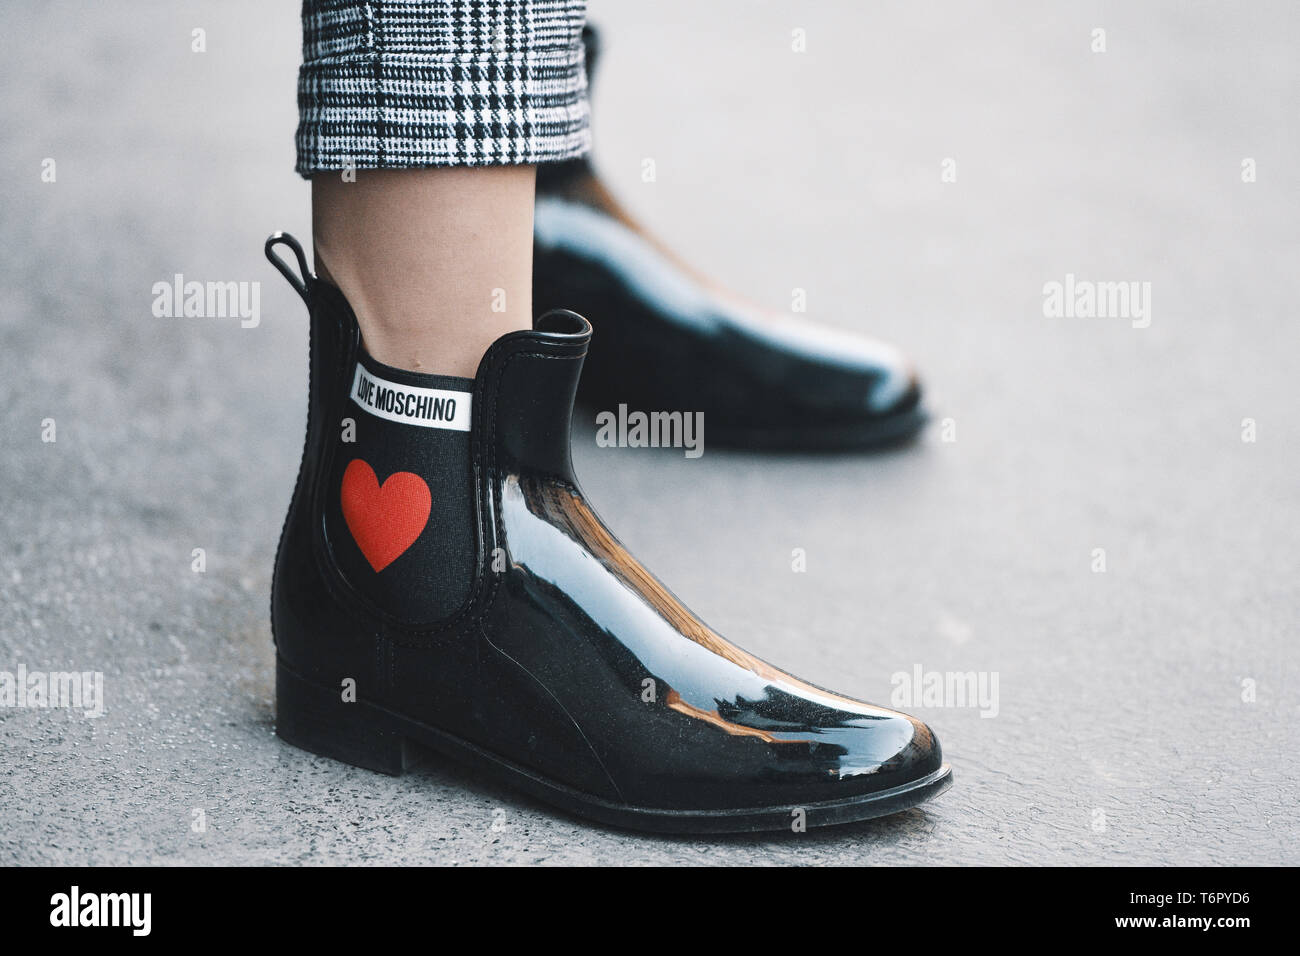 Milano, Italia - 24 Febbraio 2019: Street style - Moschino stivali  dettaglio dopo una sfilata di moda durante la Settimana della Moda Milanese  - MFWFW19 Foto stock - Alamy